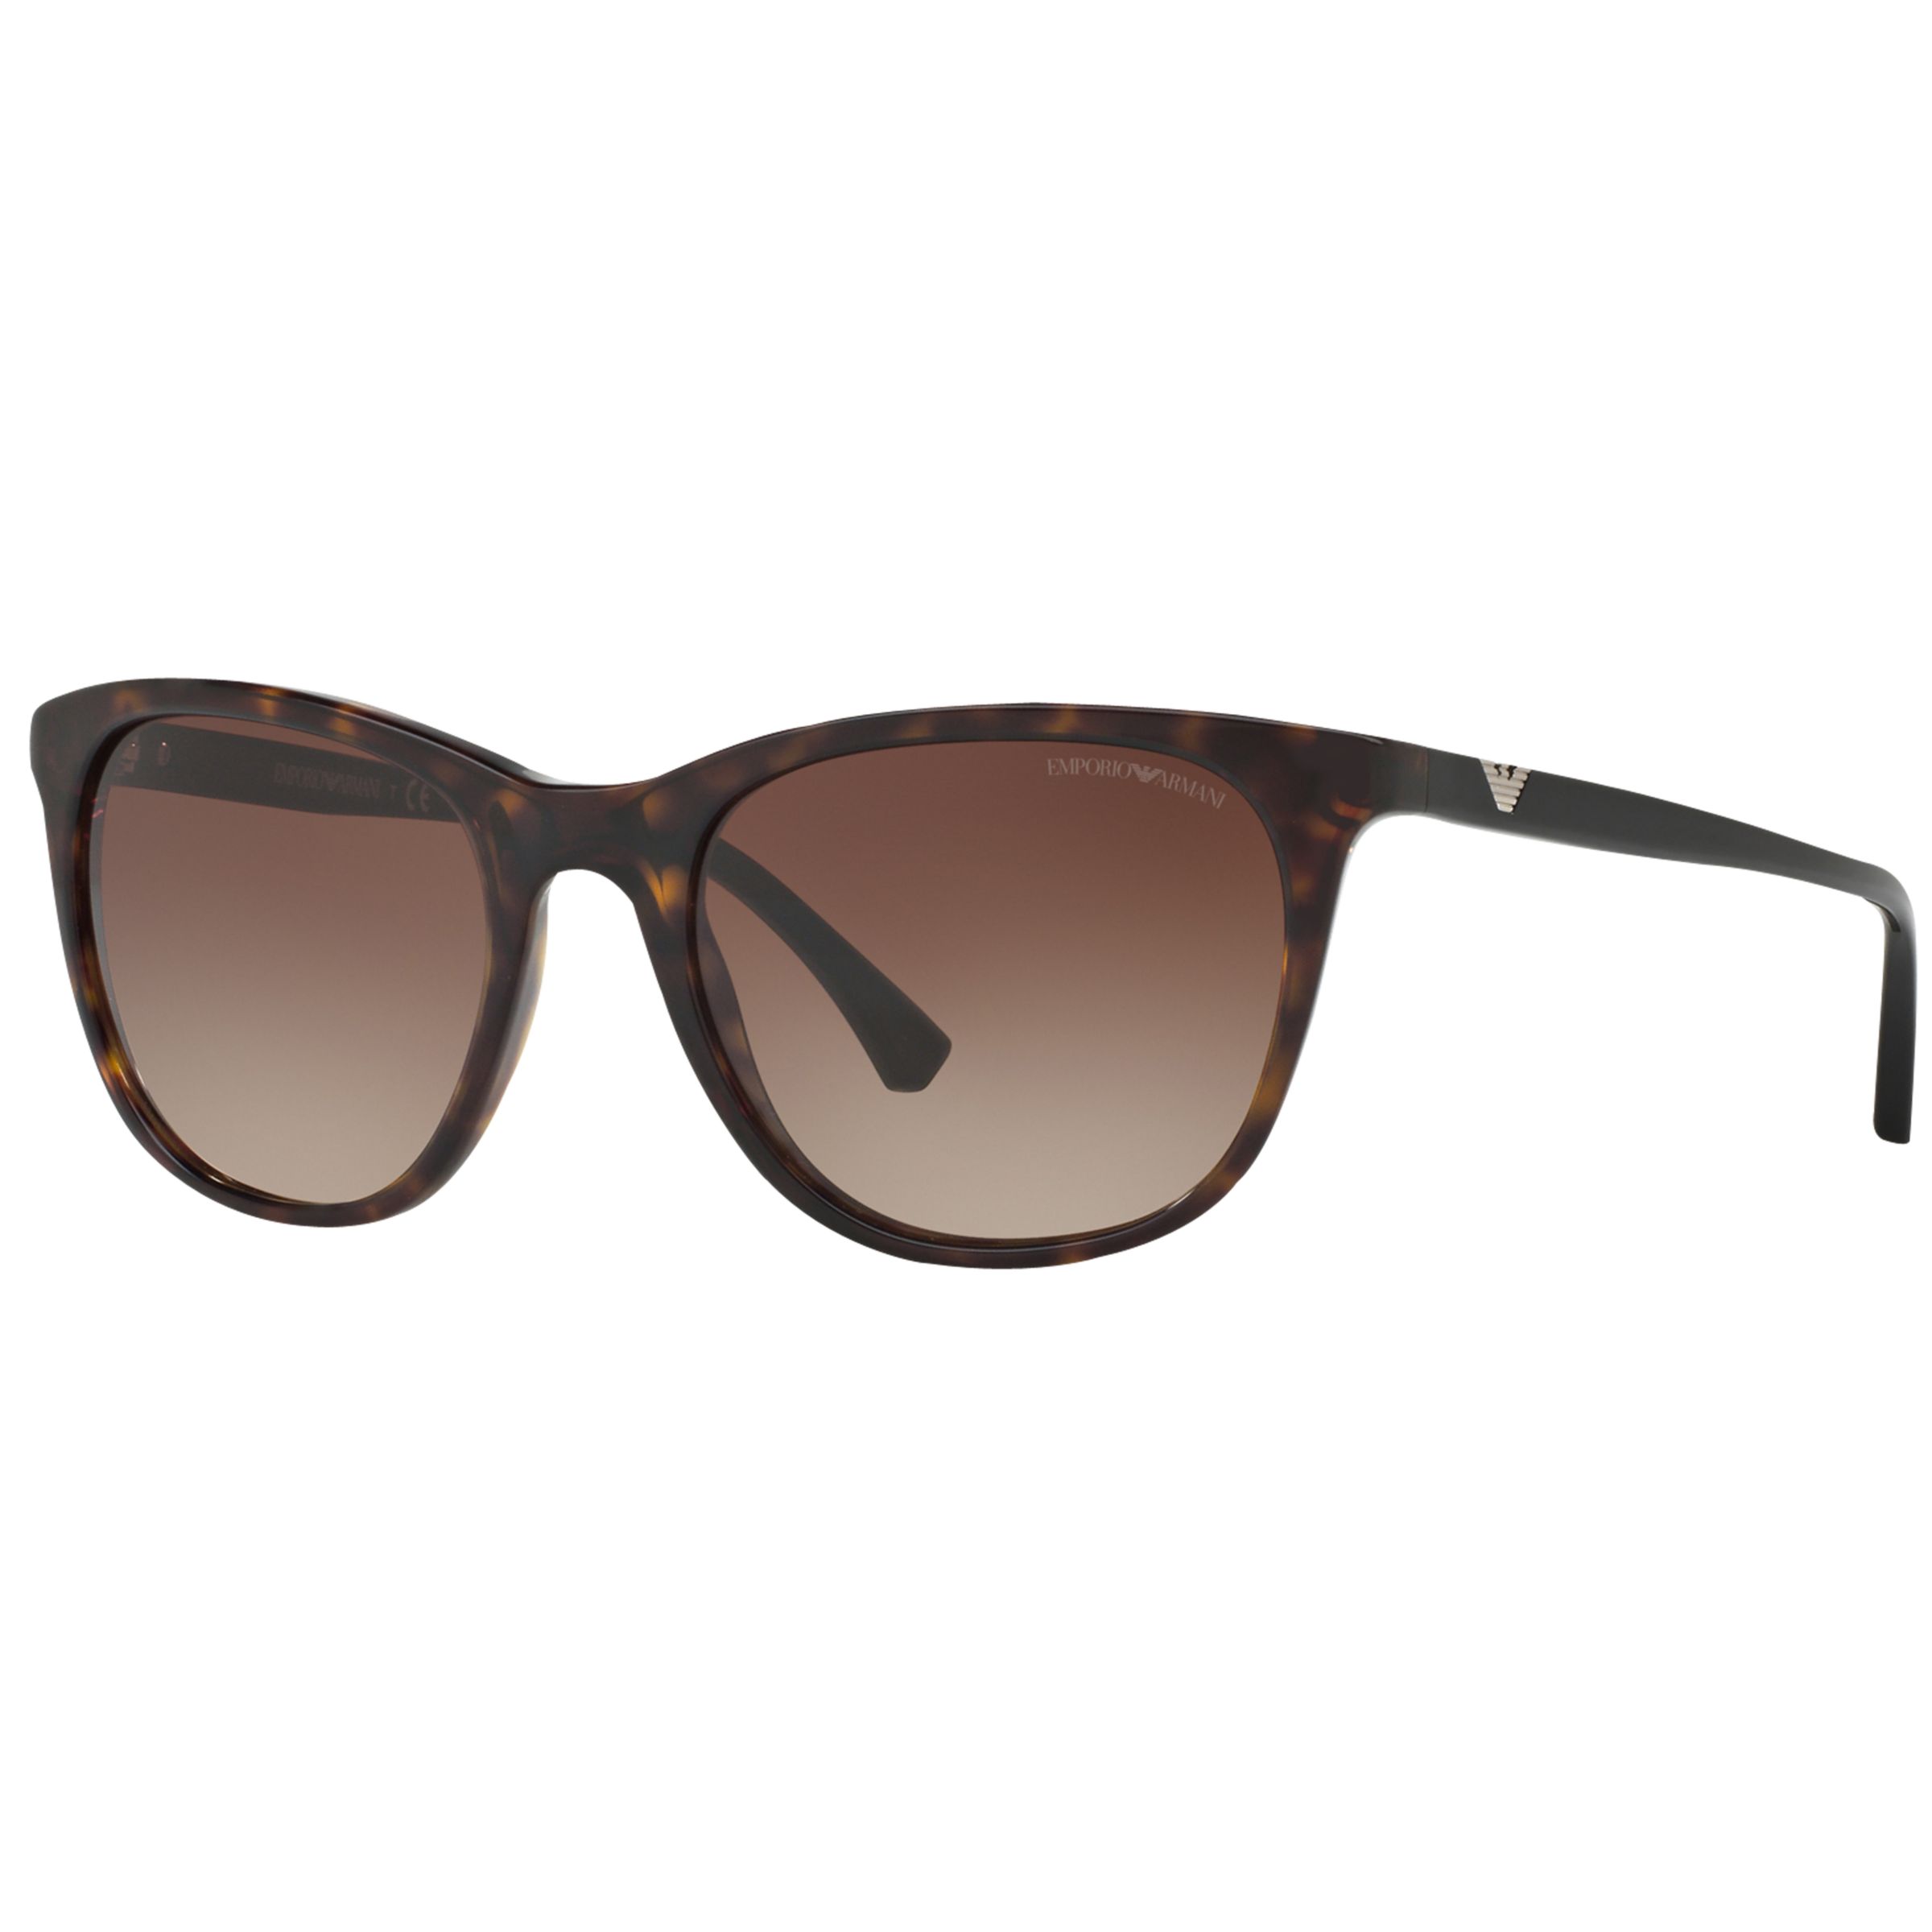 Emporio Armani EA4086 Square Sunglasses, Tortoise/Brown Gradient